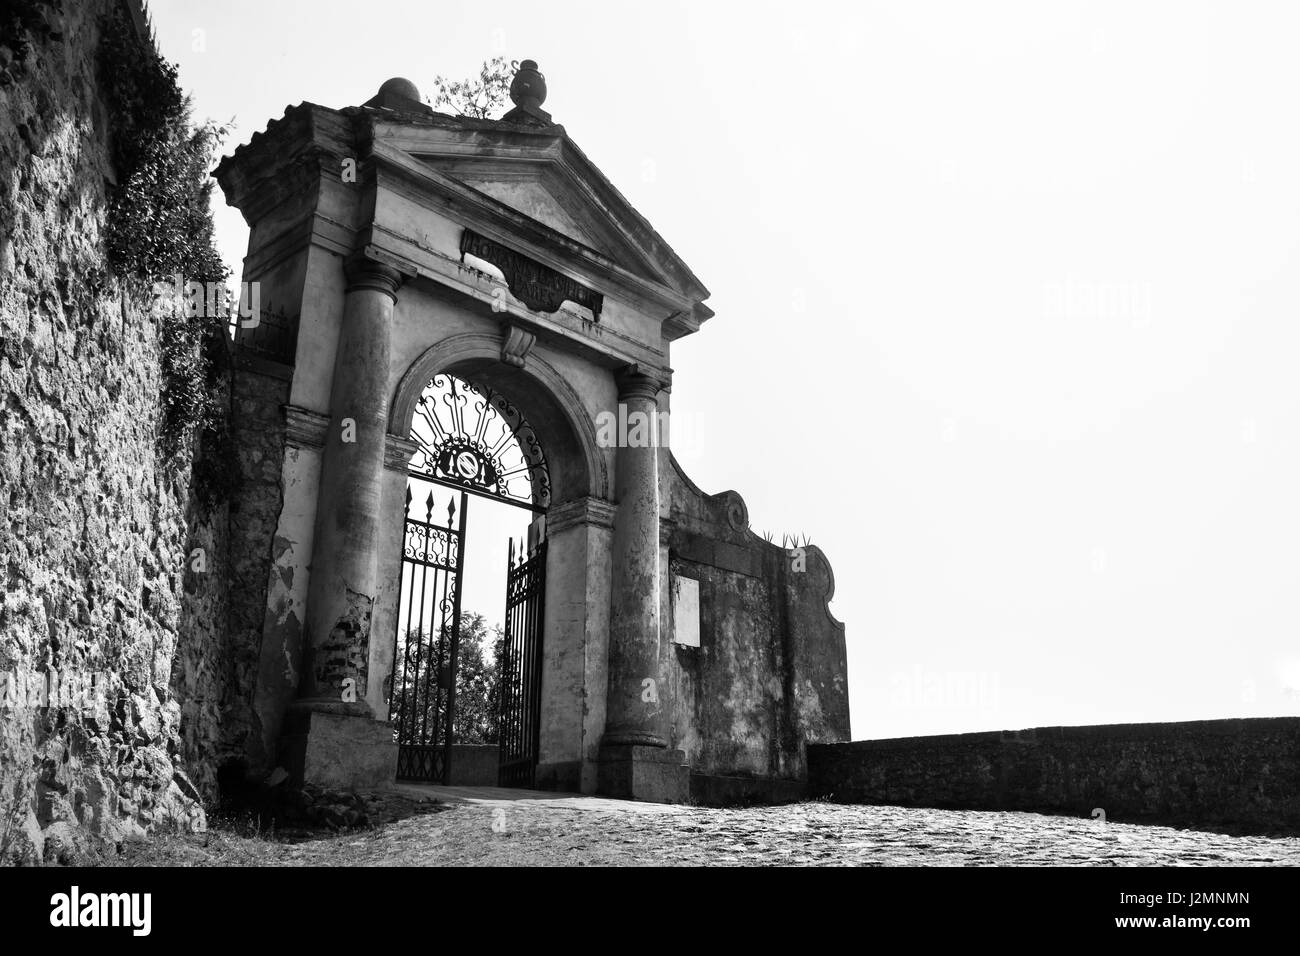 Monselice, Italien, 21. April 2017 - schwarz / weiß Bild von einem imposanten geöffnet Eisernes Tor befindet sich in Monselice Stockfoto